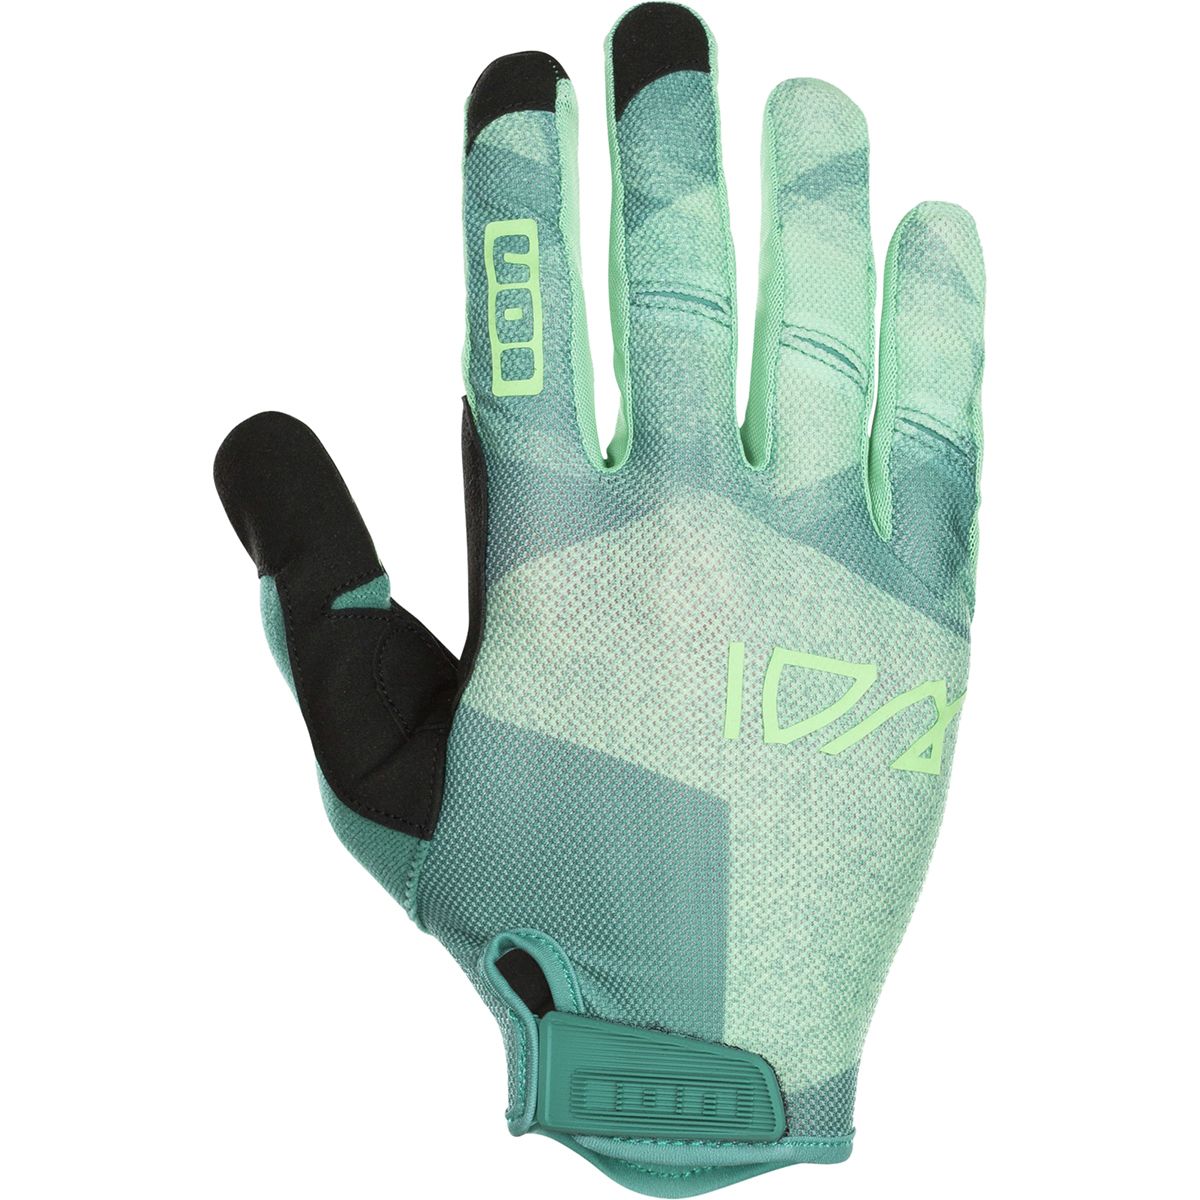 ION Traze Glove - Men's